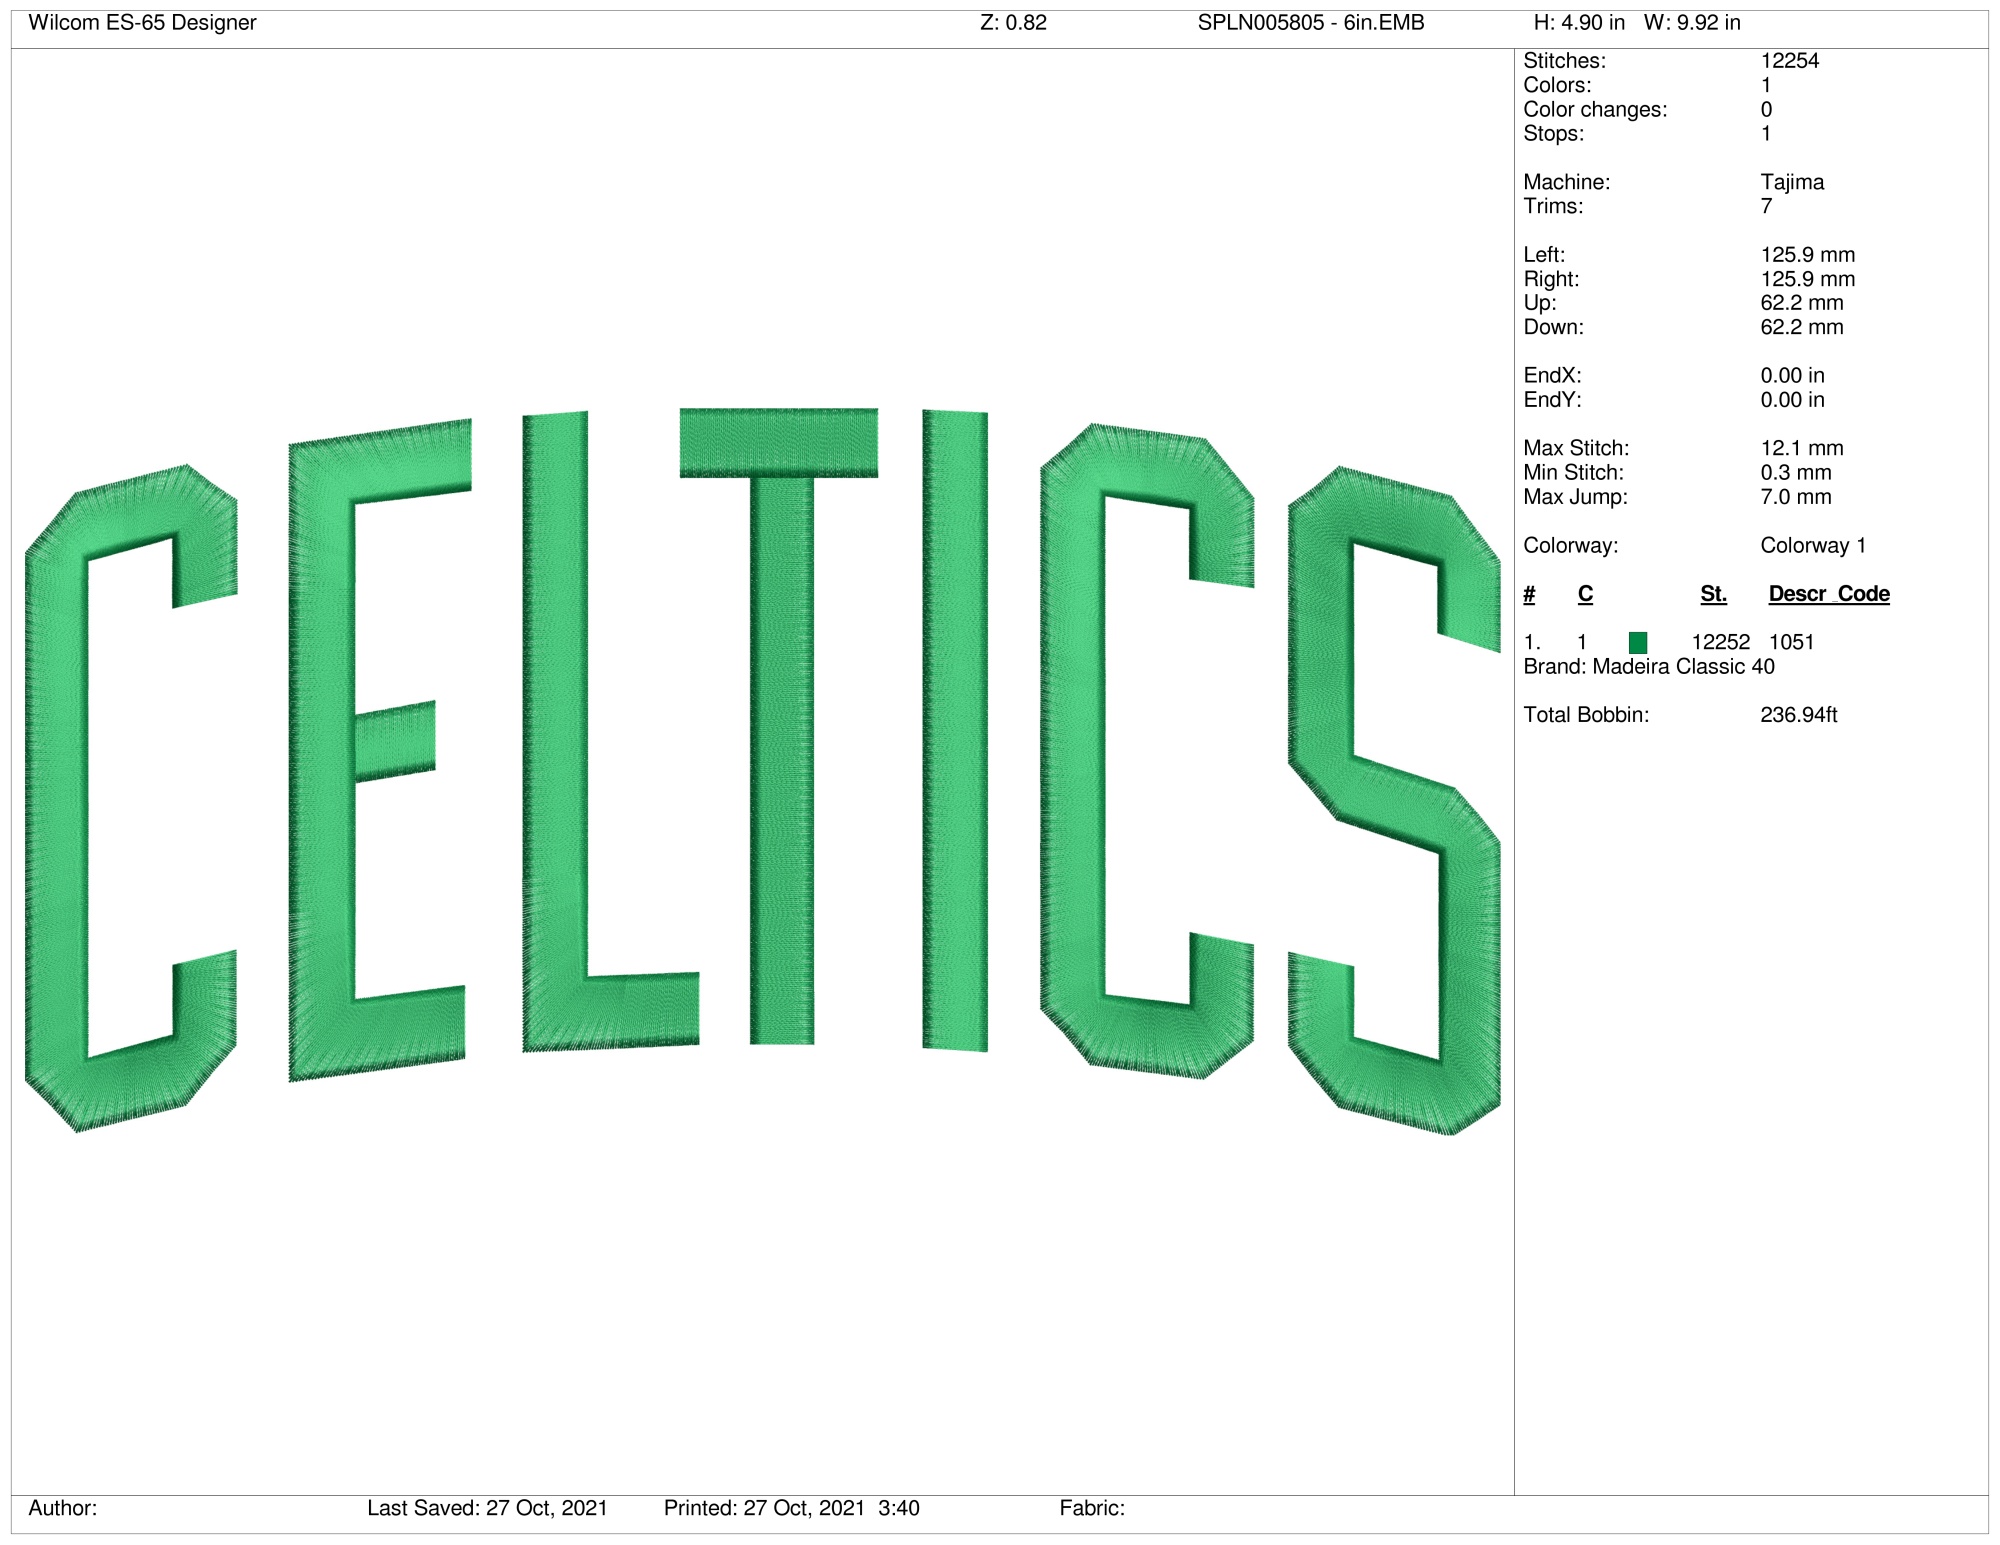 Boston Celtics - Machine Embroidery designs and SVG files